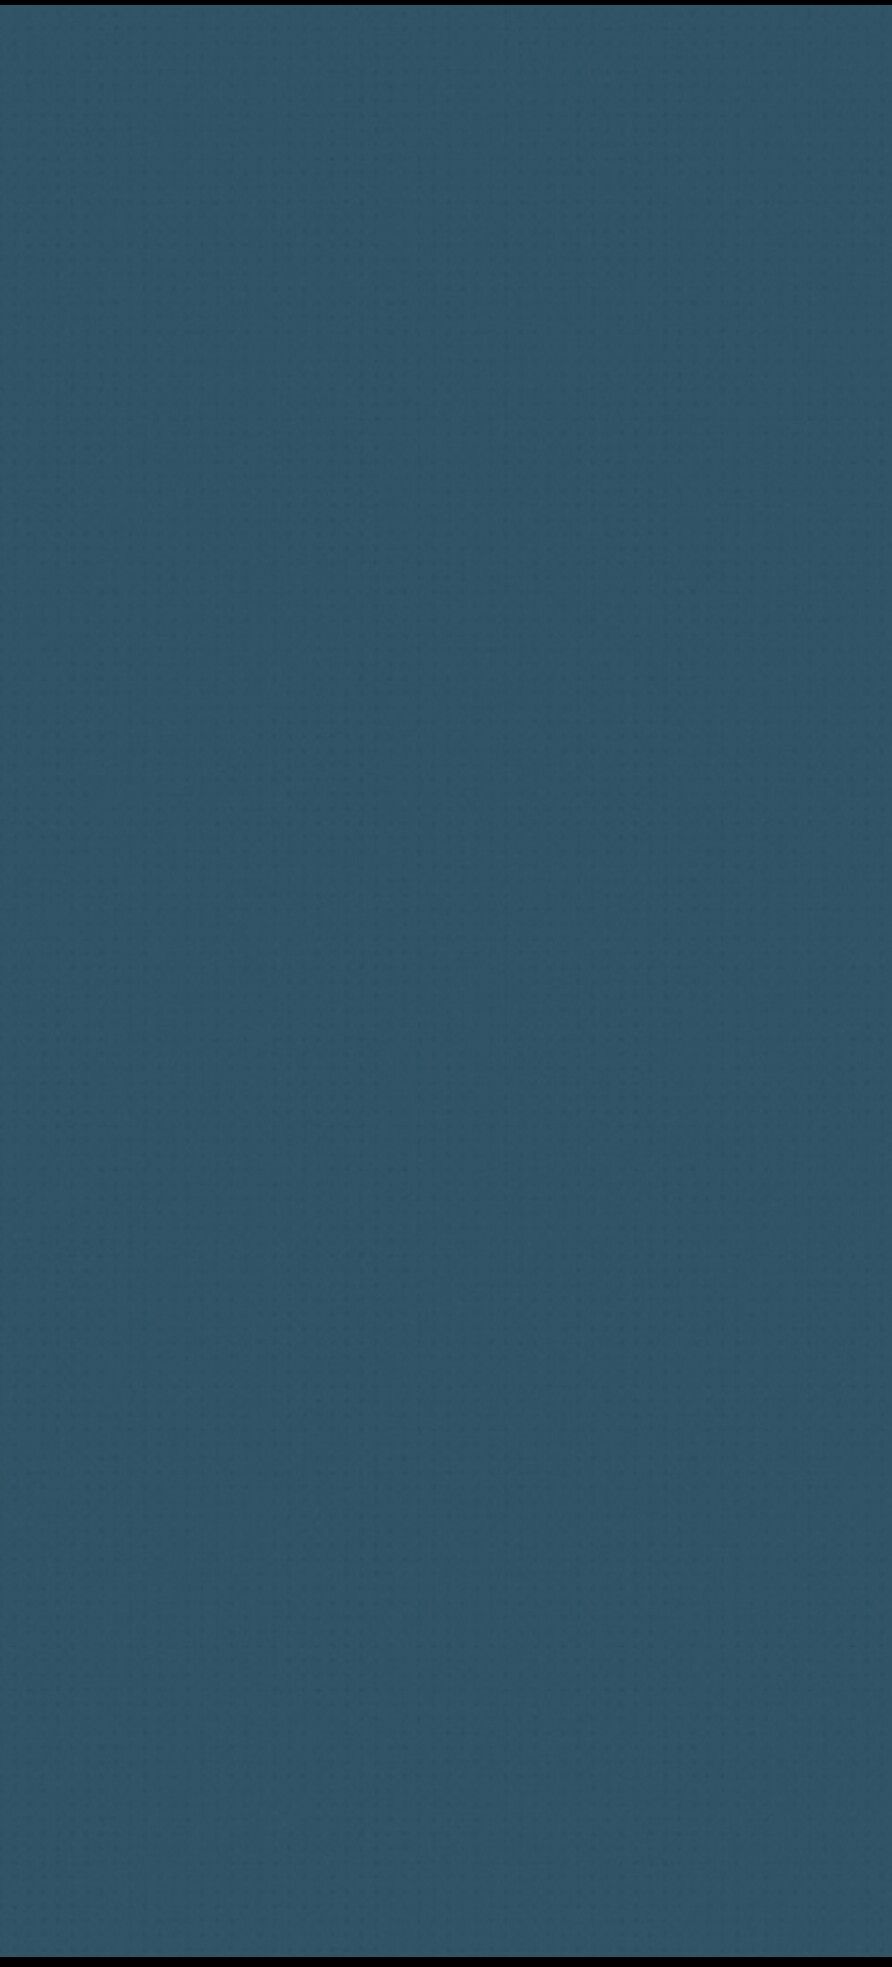 Void background blank blue empty neon open space HD phone wallpaper   Peakpx